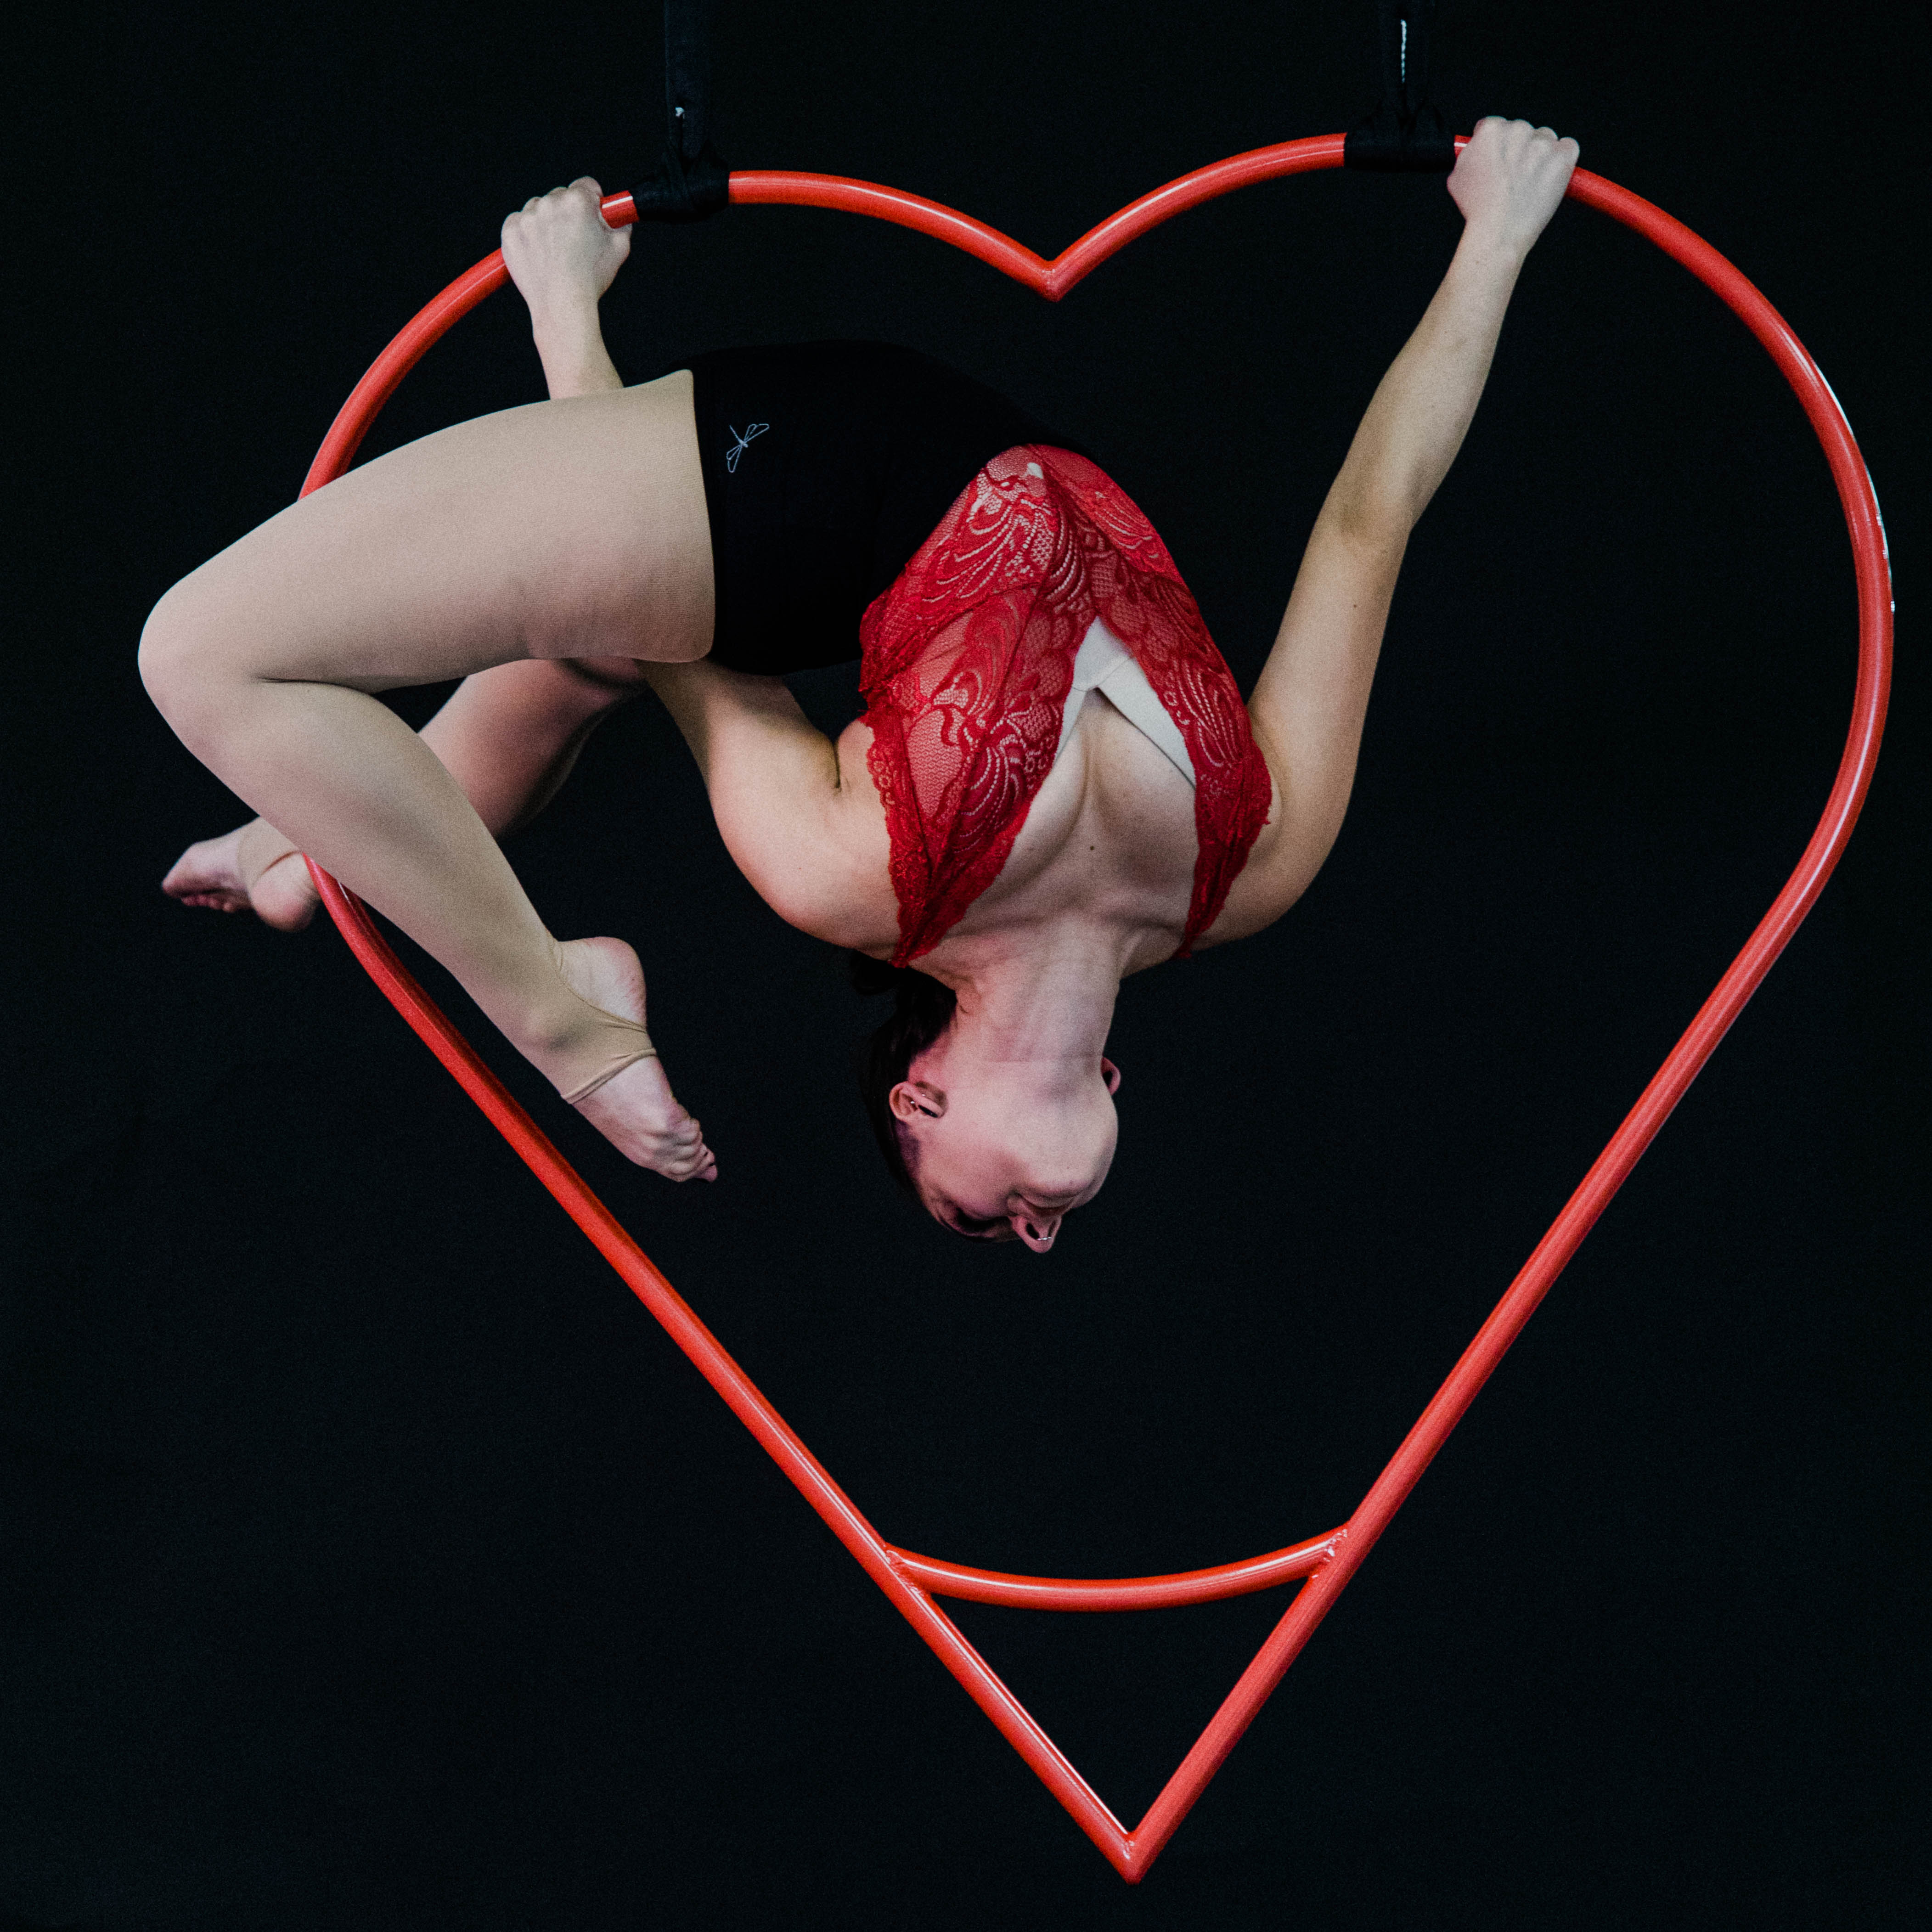 performer upside down inside the aerial heart hoop